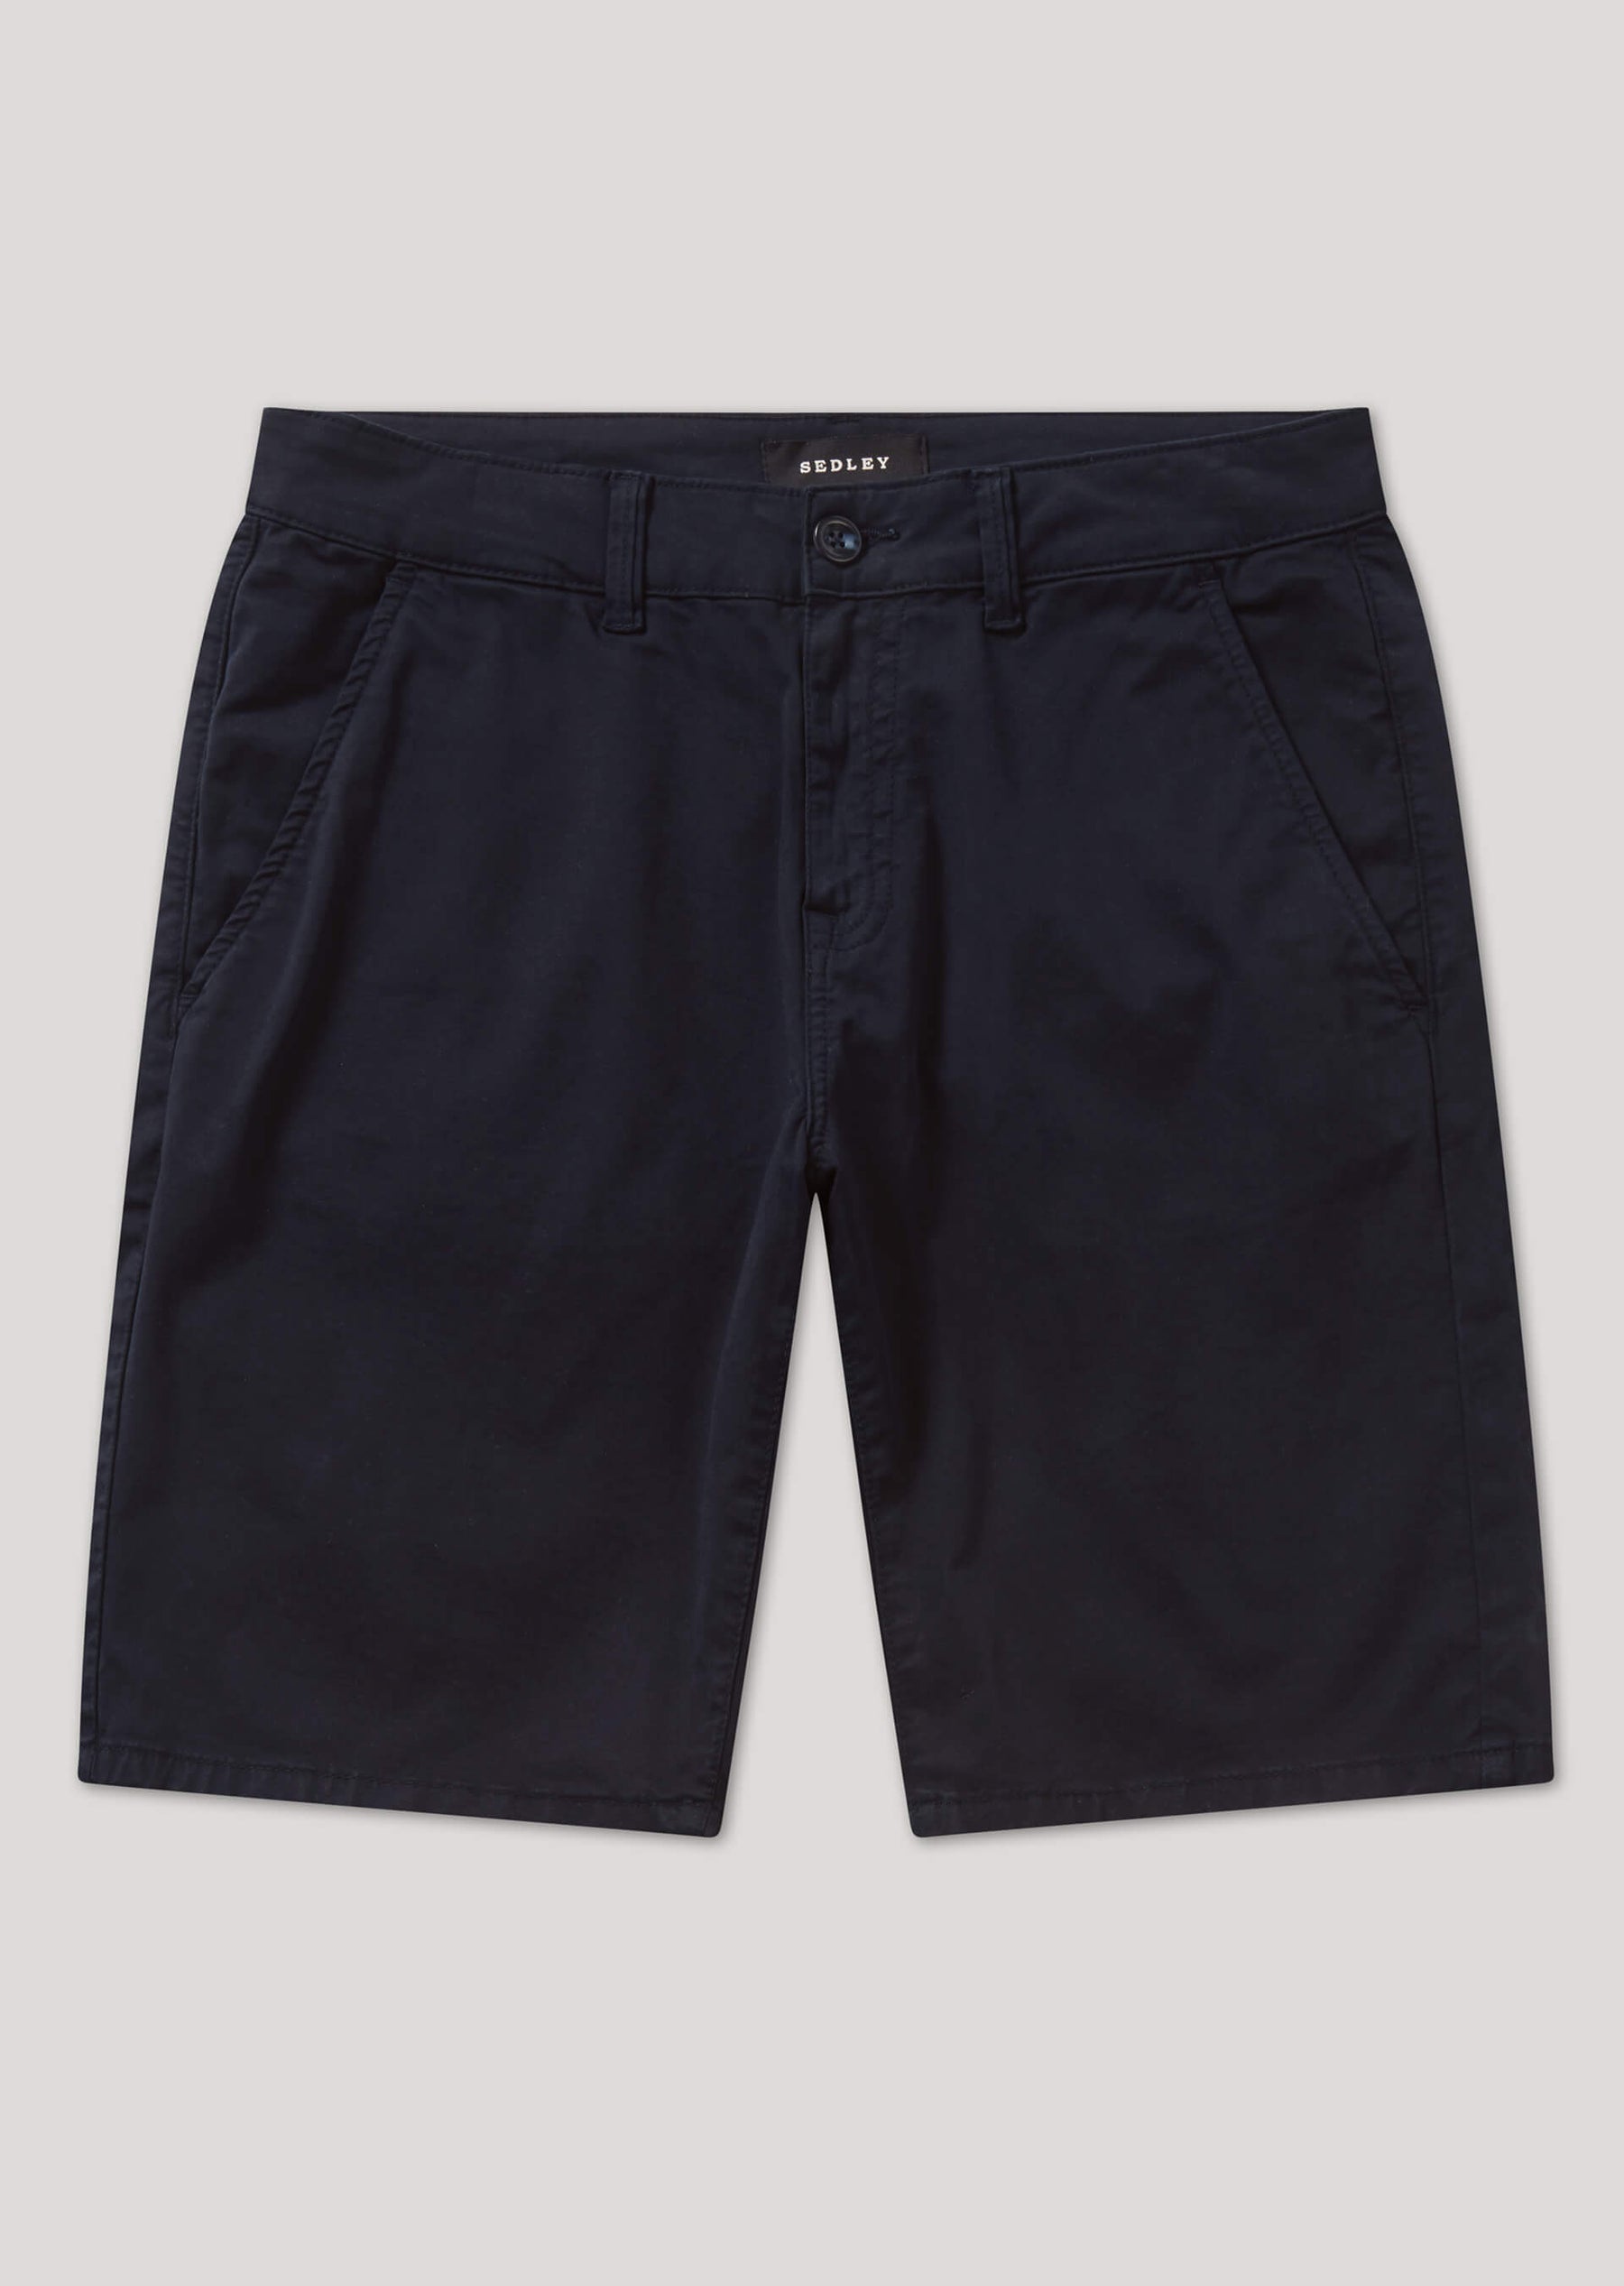 Redlaw Navy Chino Shorts